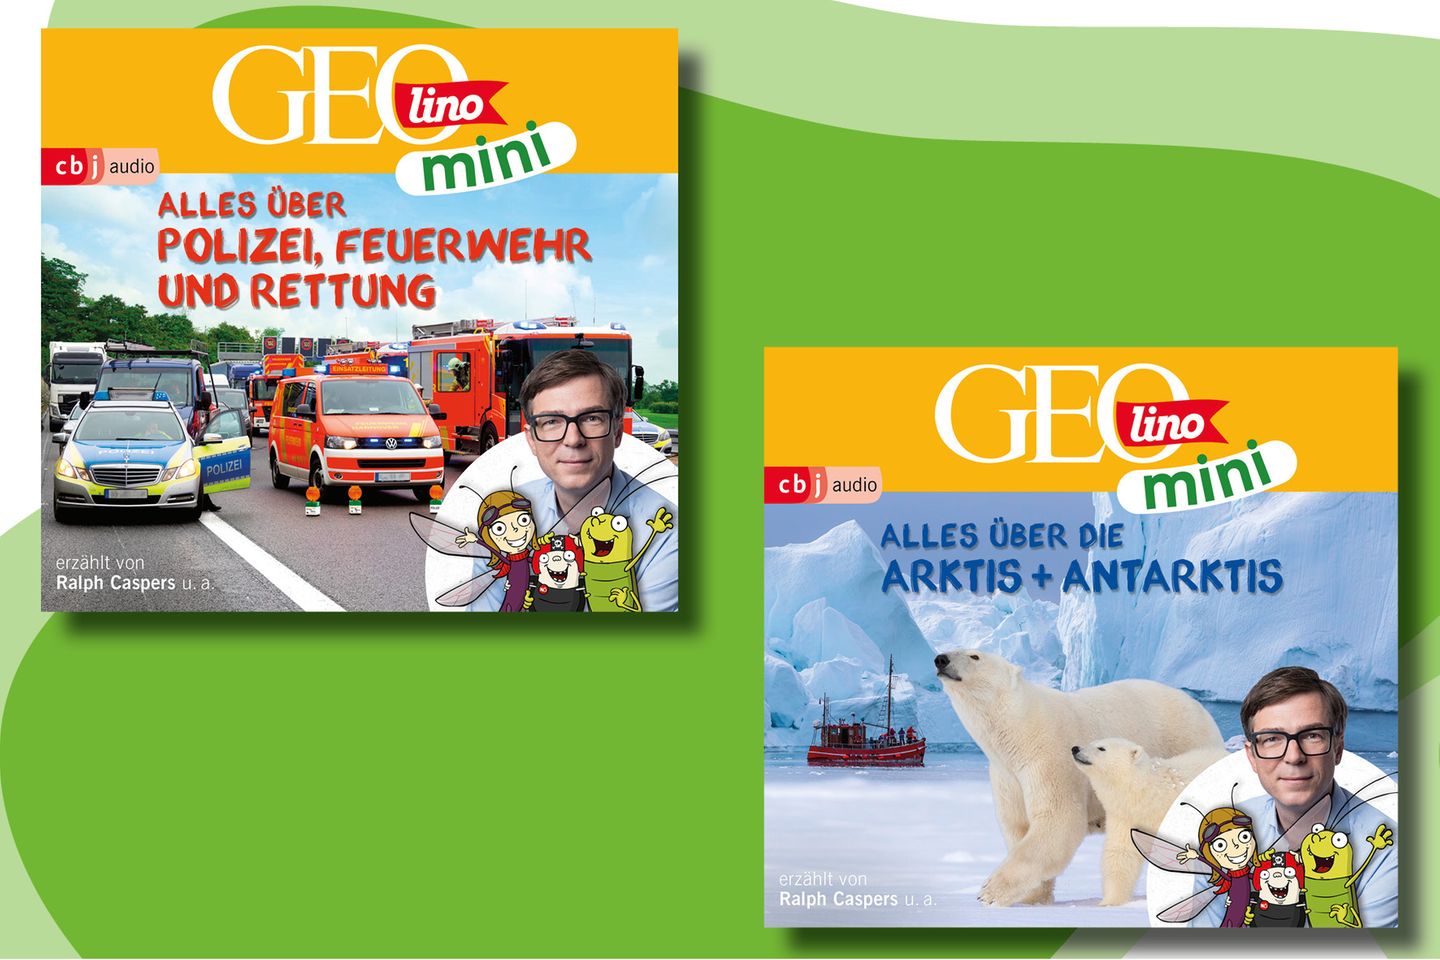 GEOlino Mini Hörspiele Band 11 und 12: Alles über Polizei, Feuerwehr und Rettung und alles über die Arktis und Antarktis